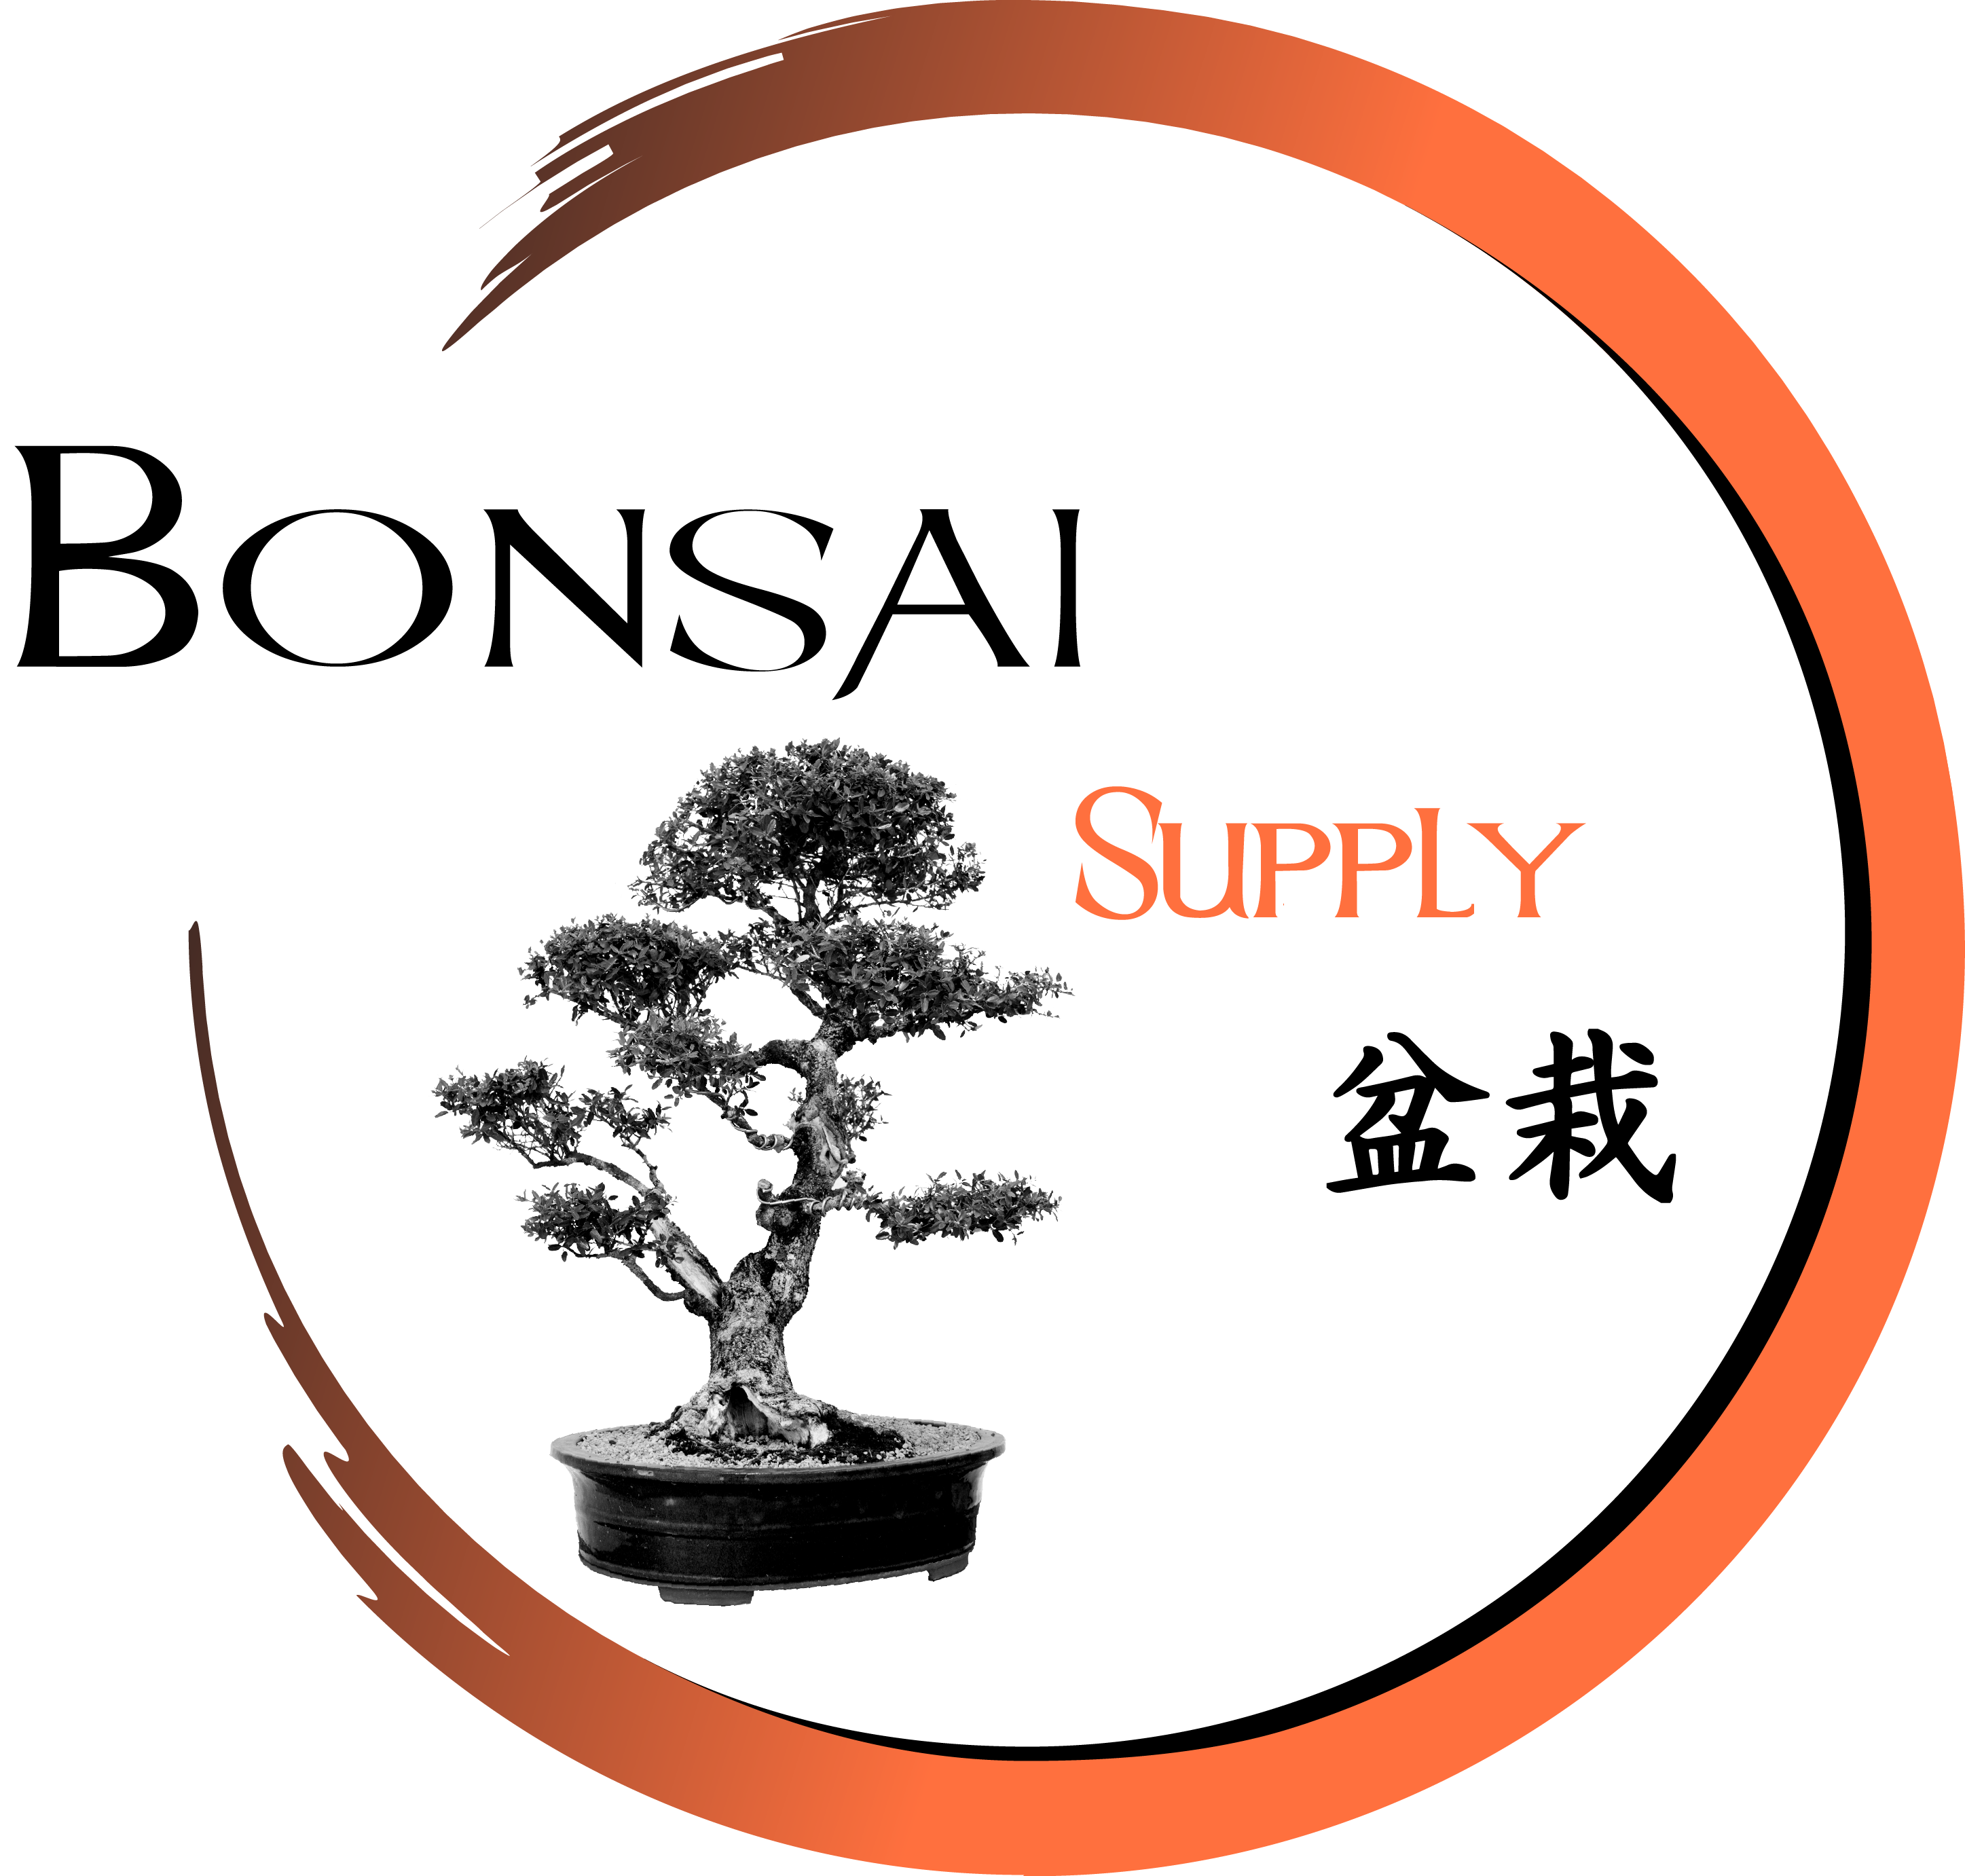 The Bonsai Supply - High Quality & Affordable Bonsai Supplies